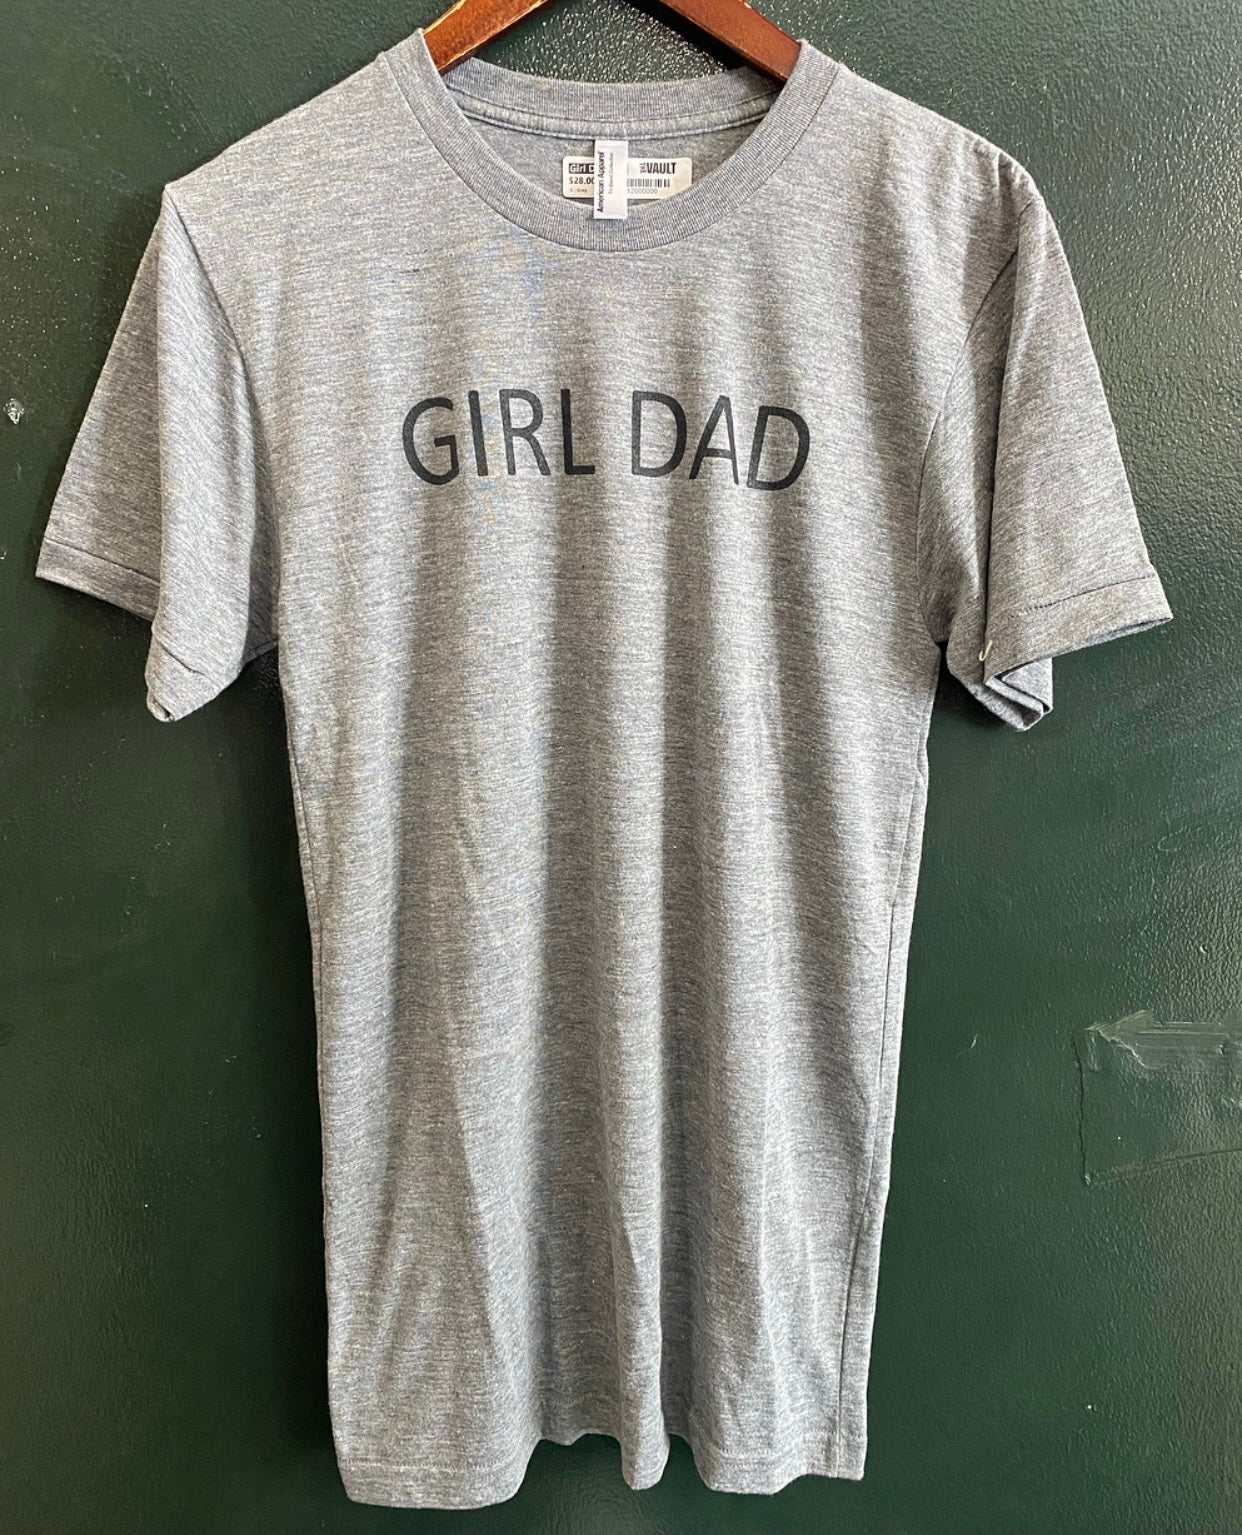 Girl Dad Tee - Grey